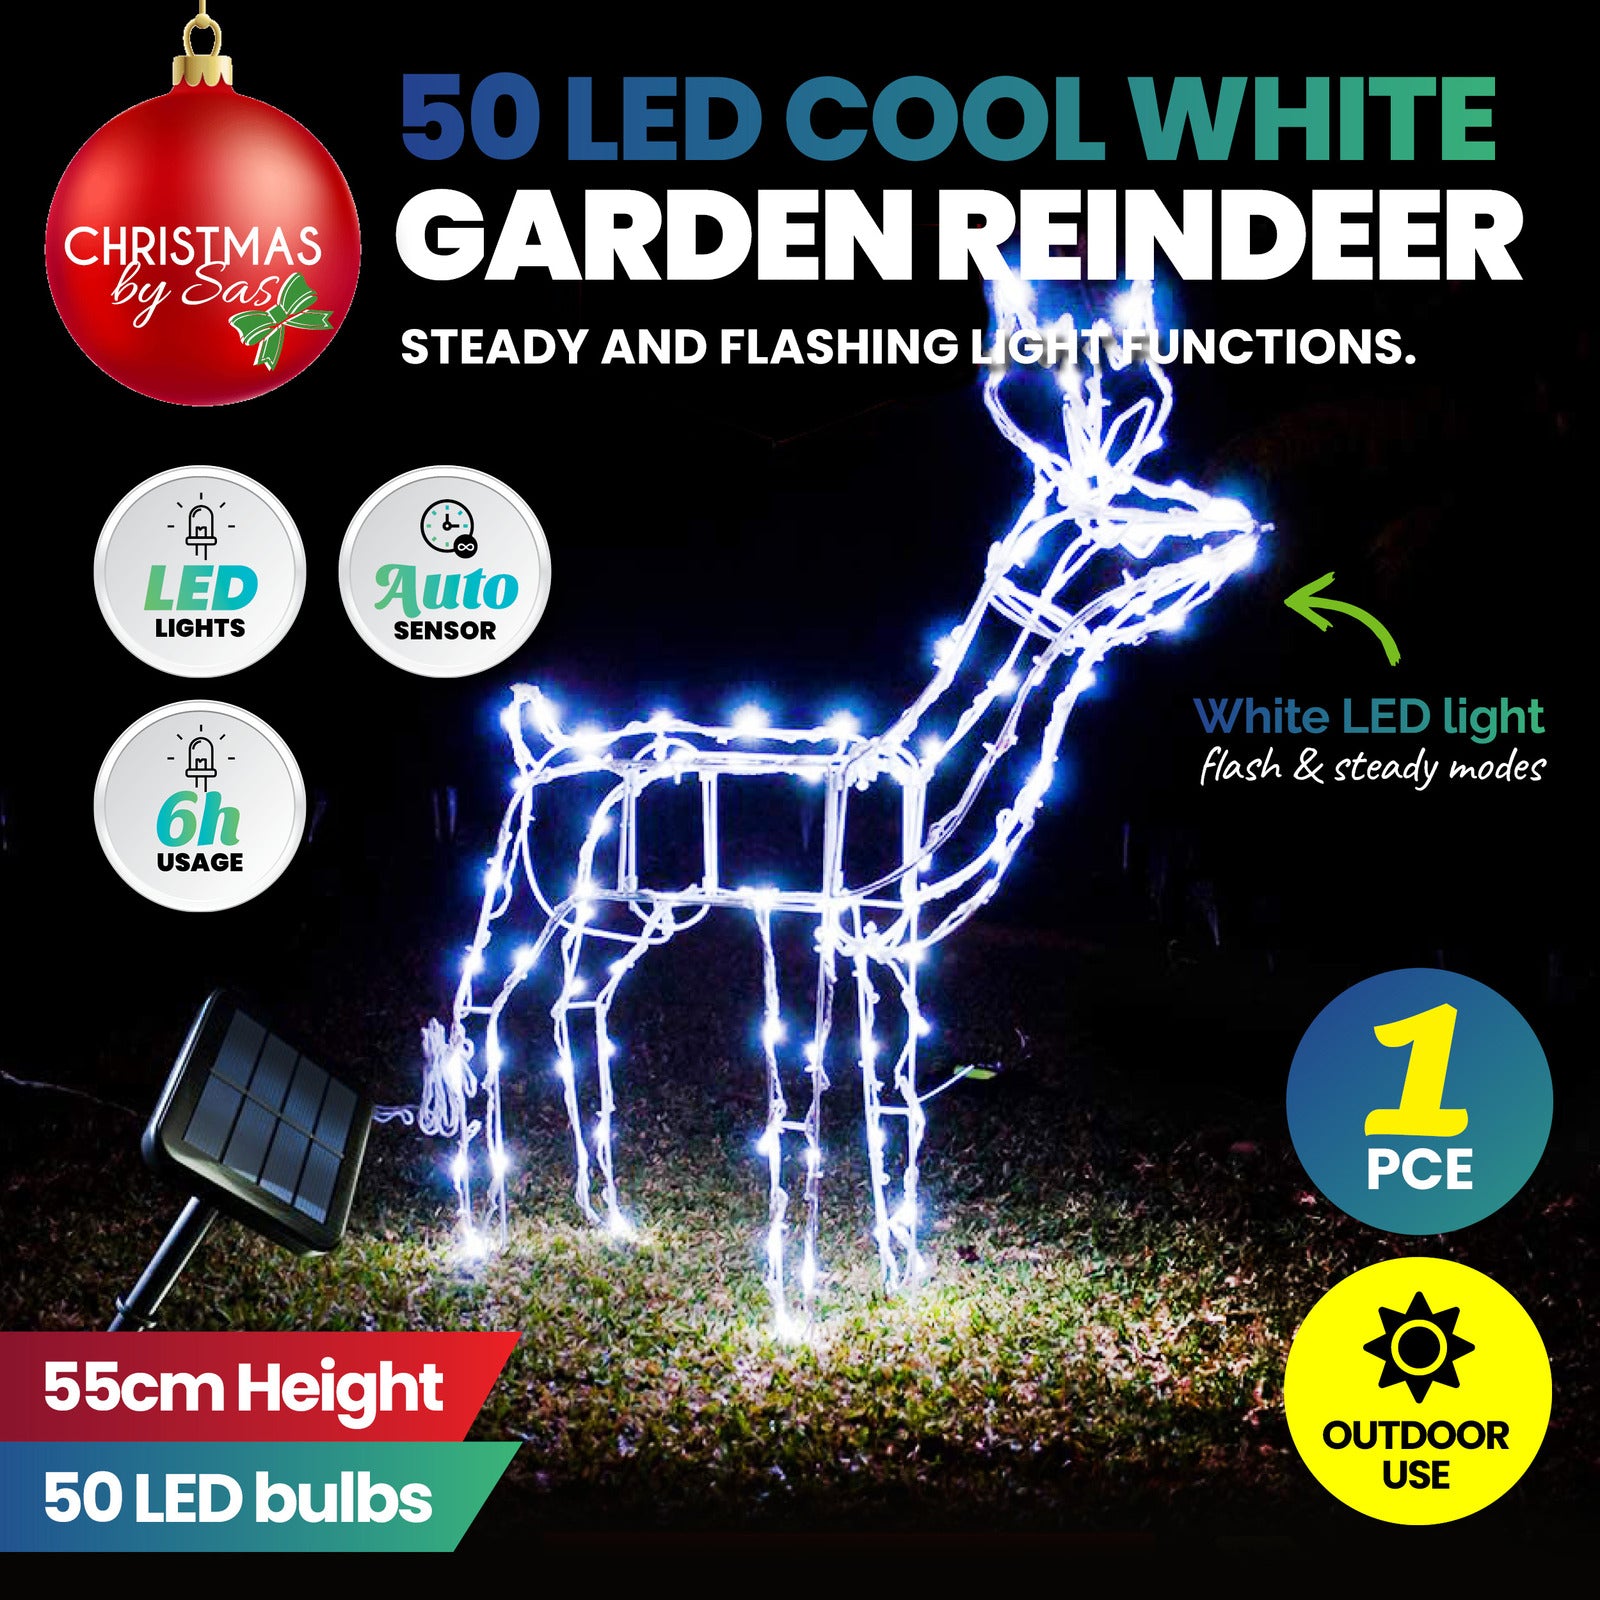 55cm Reindeer Rope Light Solar LED Cool White Auto Sensor